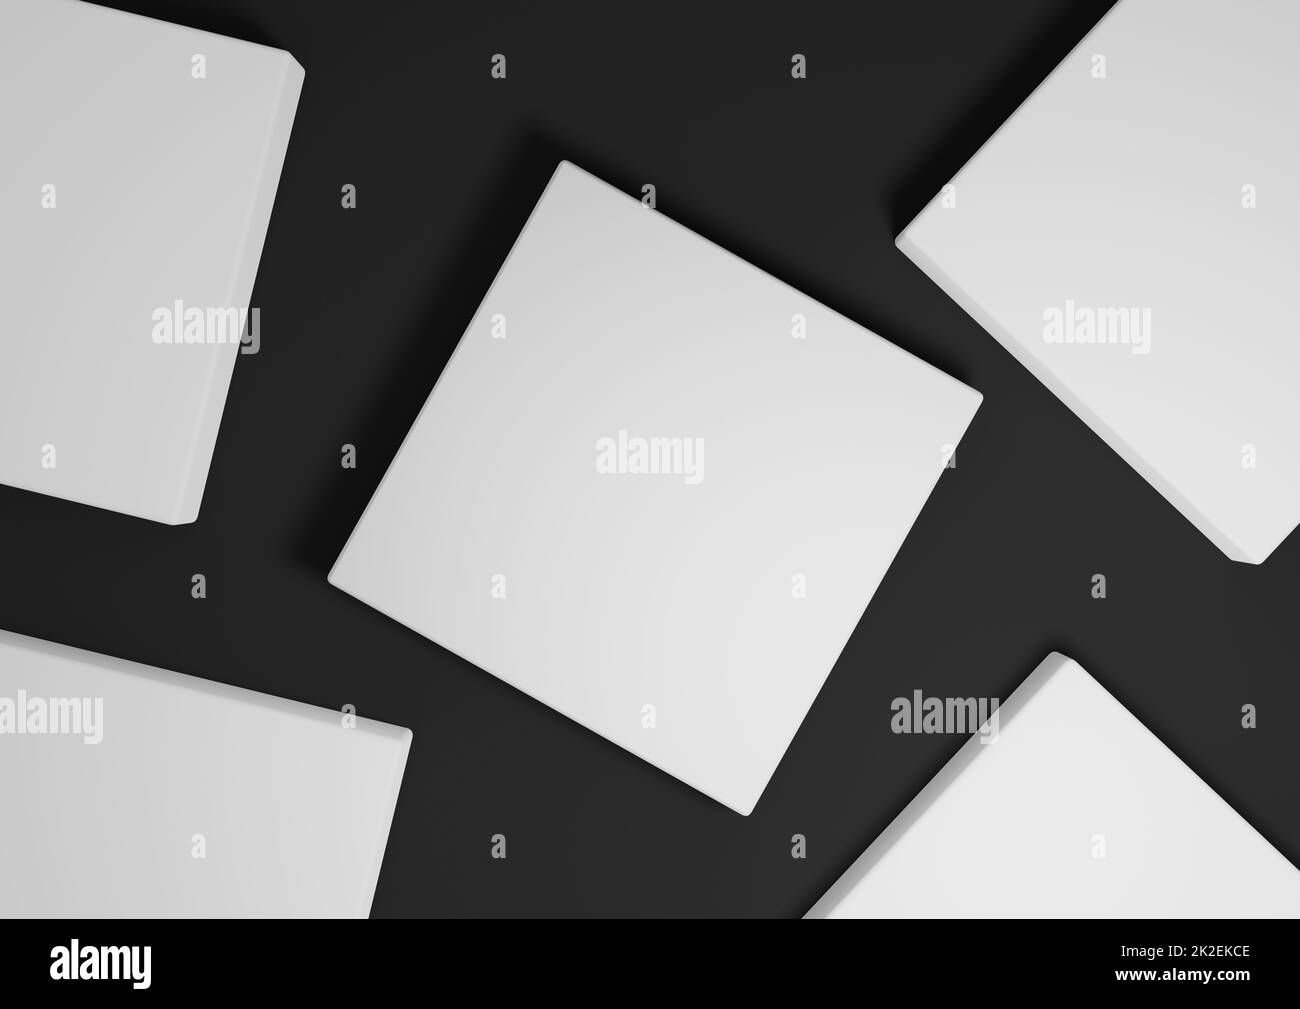 Schwarz, dunkelgrau, schwarz und weiß, 3D Render minimaler, einfacher Draufsicht flacher Produktdisplay-Hintergrund mit Podestständer und geometrischen Formen Stockfoto